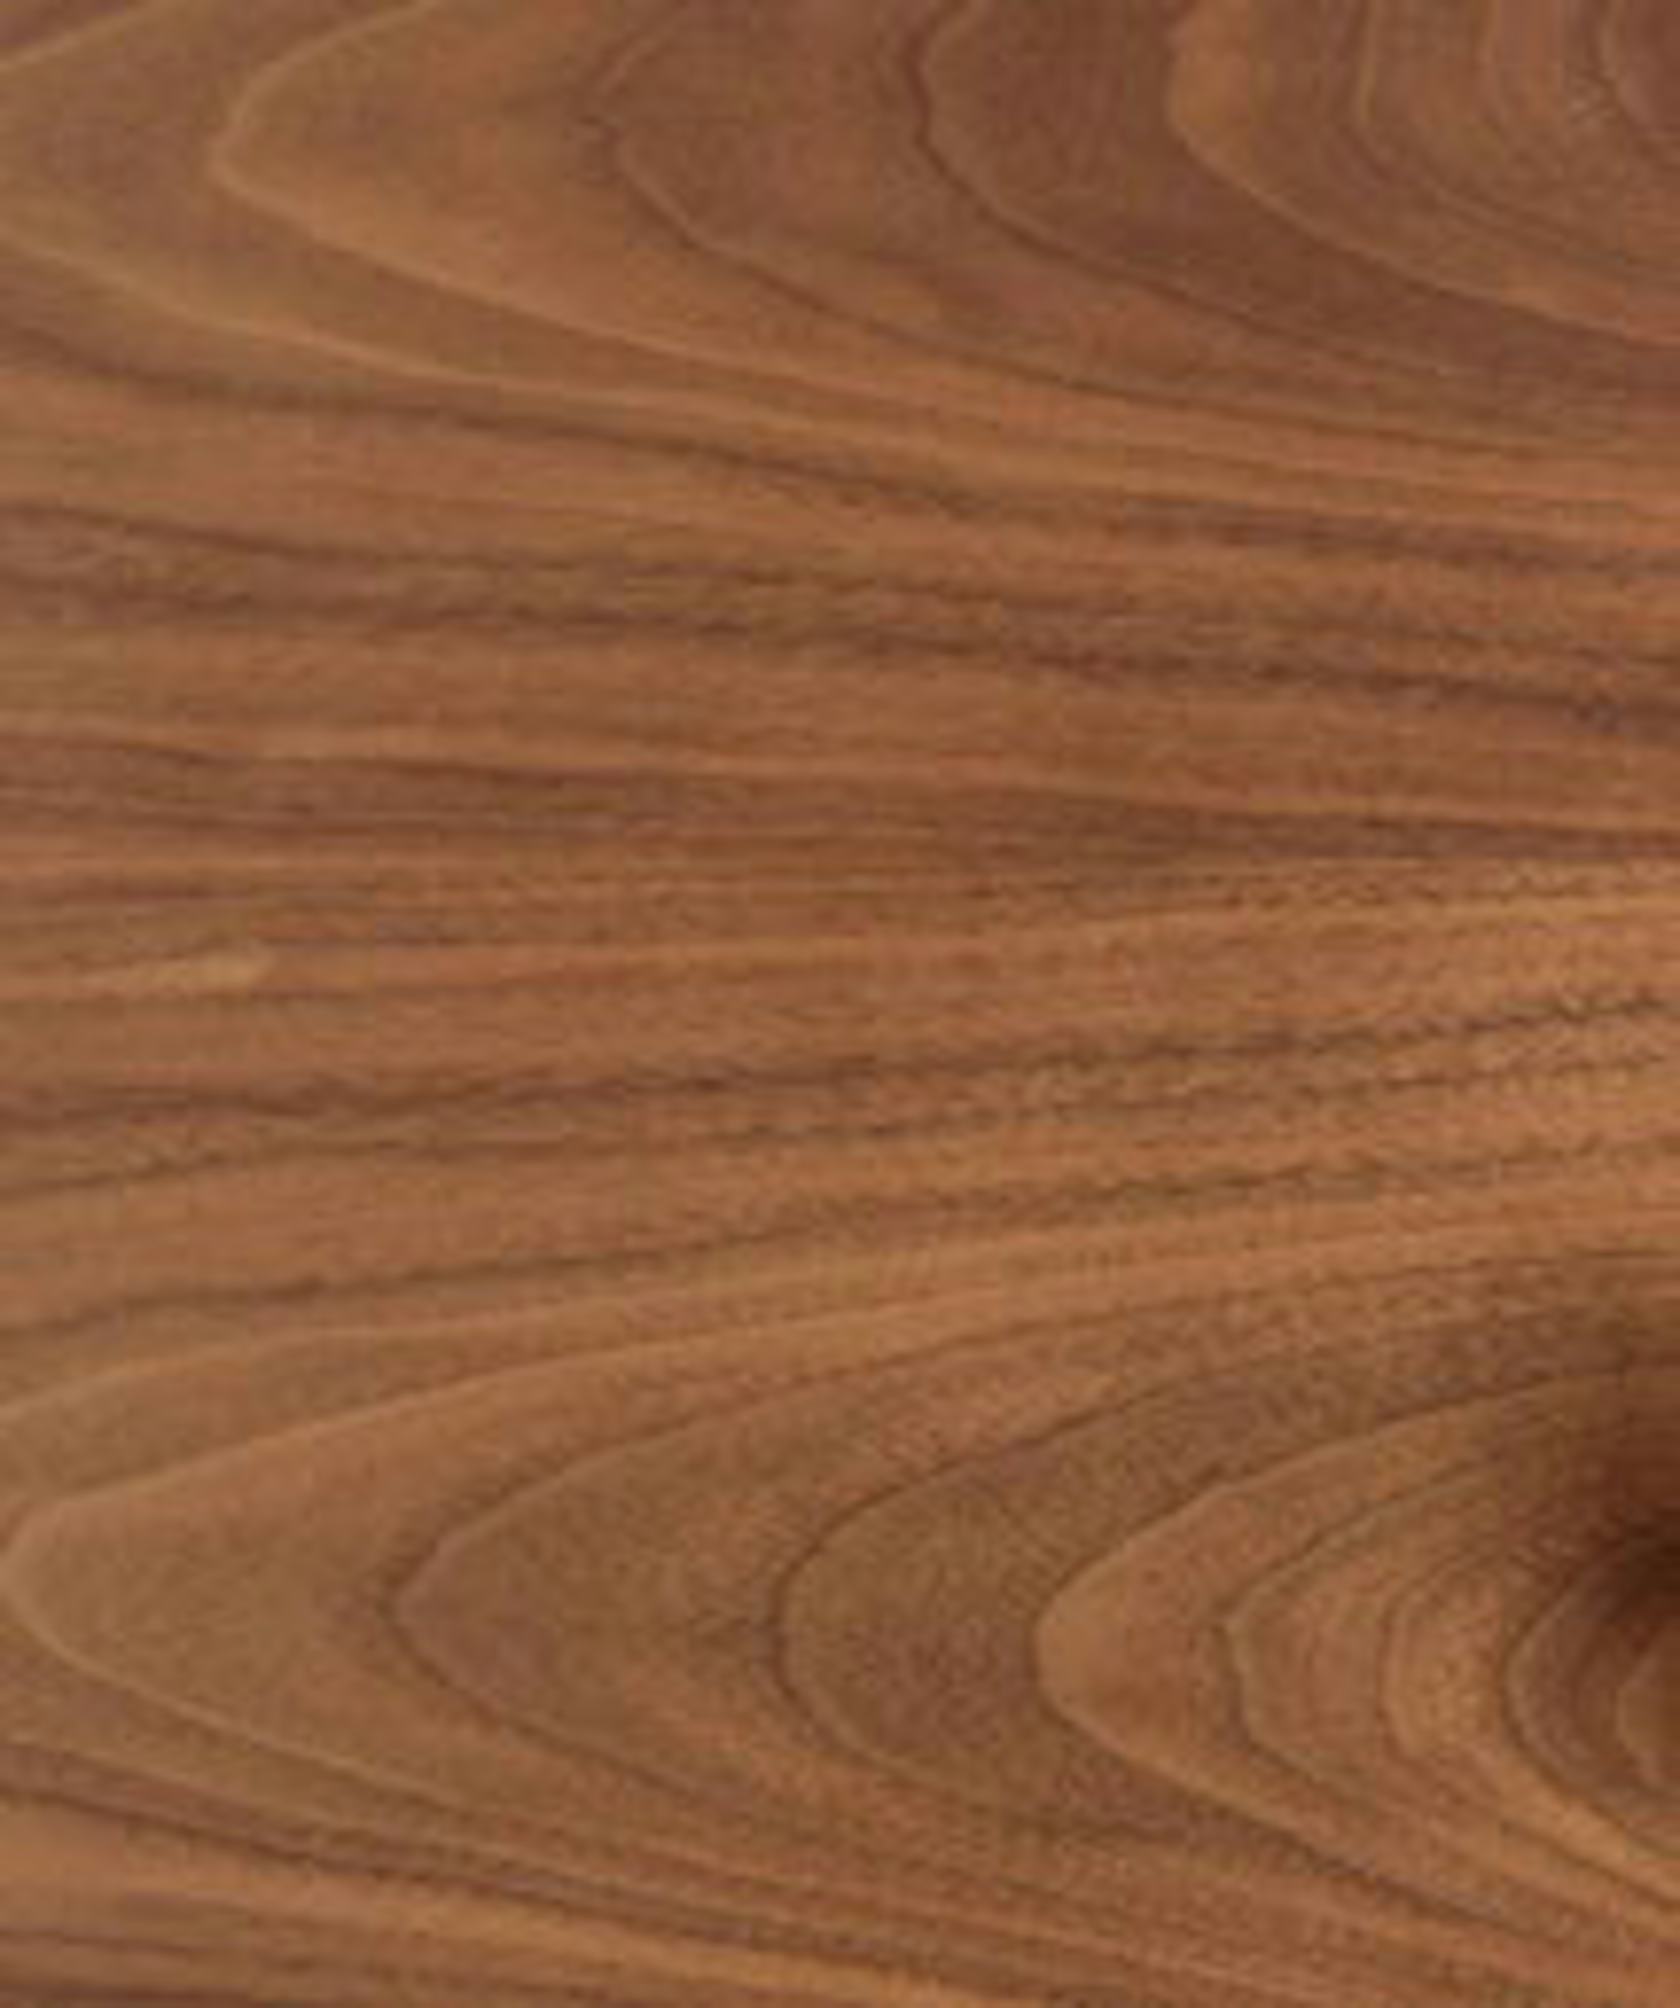 wood hardwood plywood floor flooring texture lumber stained wood